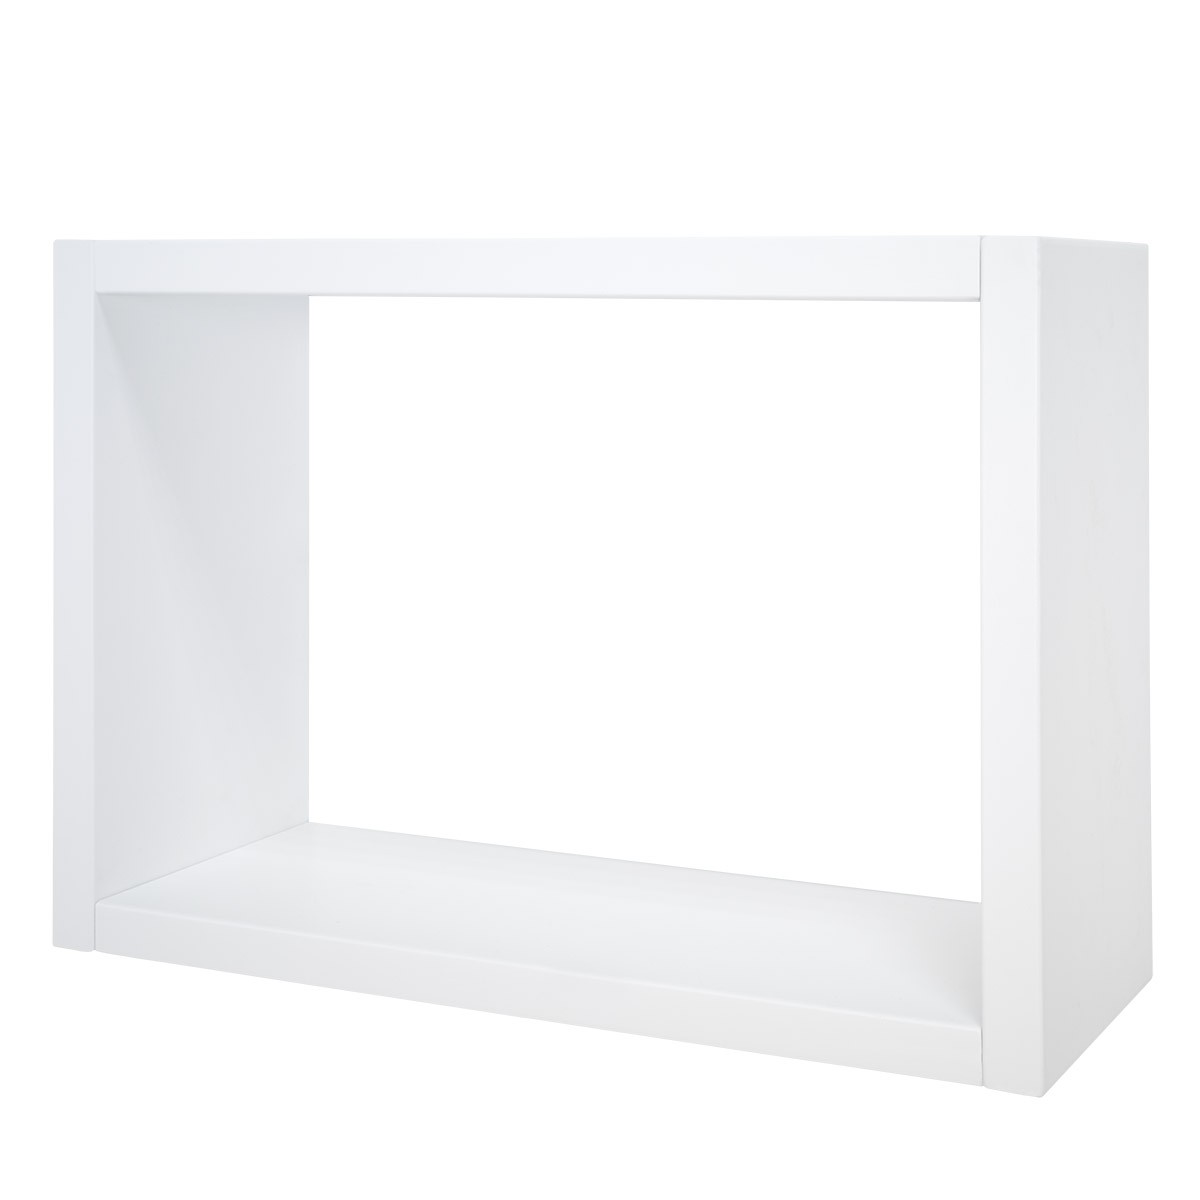 Estantería tipo cubo, estante blanco para libros con 9 cubos, estante  pequeño de 3 niveles, estantería baja debajo de la ventana, estantes de